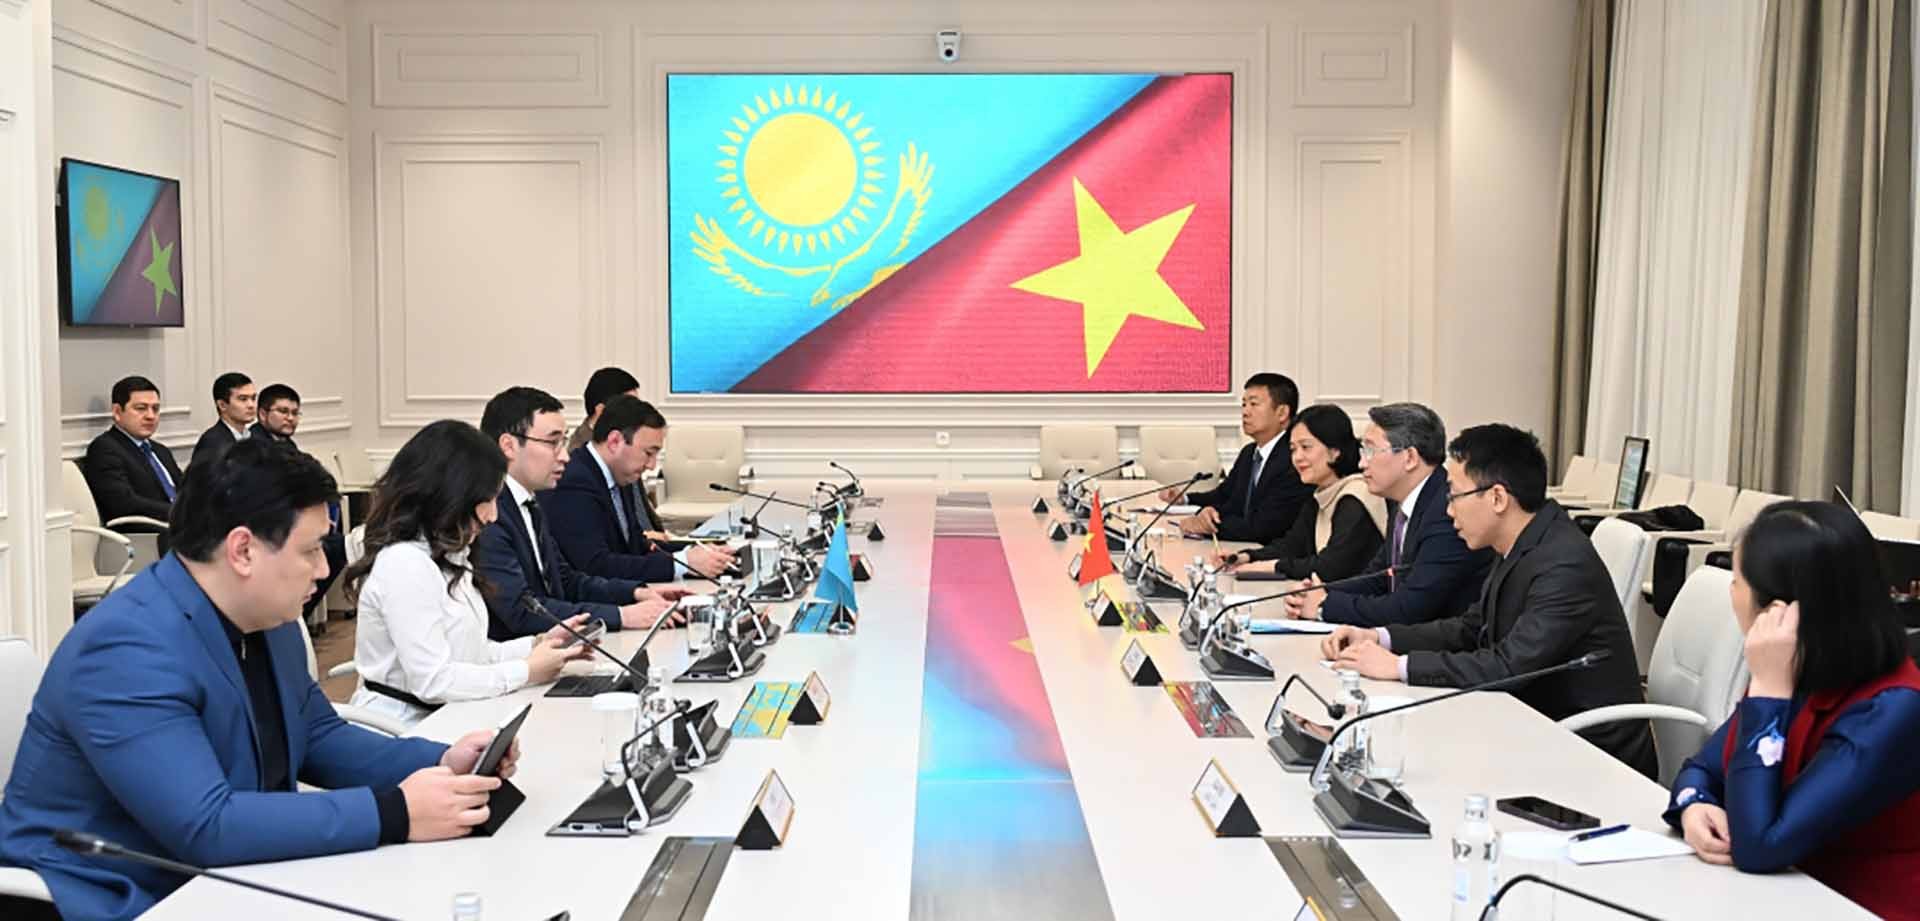 Thành phố Almaty, Kazakhstan đang xúc tiến đặt tên đường mang tên Chủ tịch Hồ Chí Minh